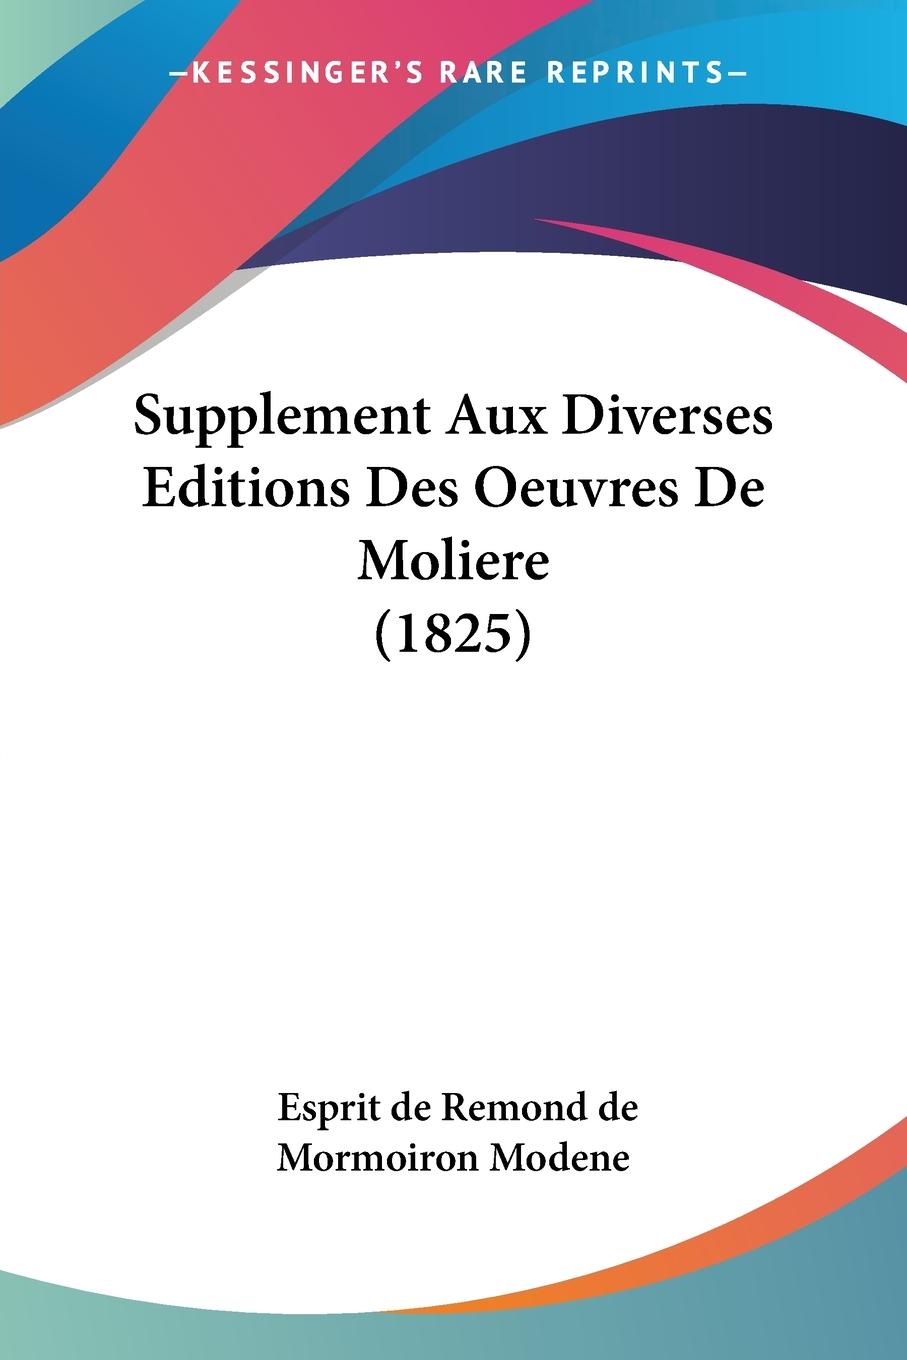 Supplement Aux Diverses Editions Des Oeuvres De Moliere (1825) - Modene, Esprit De Remond De Mormoiron